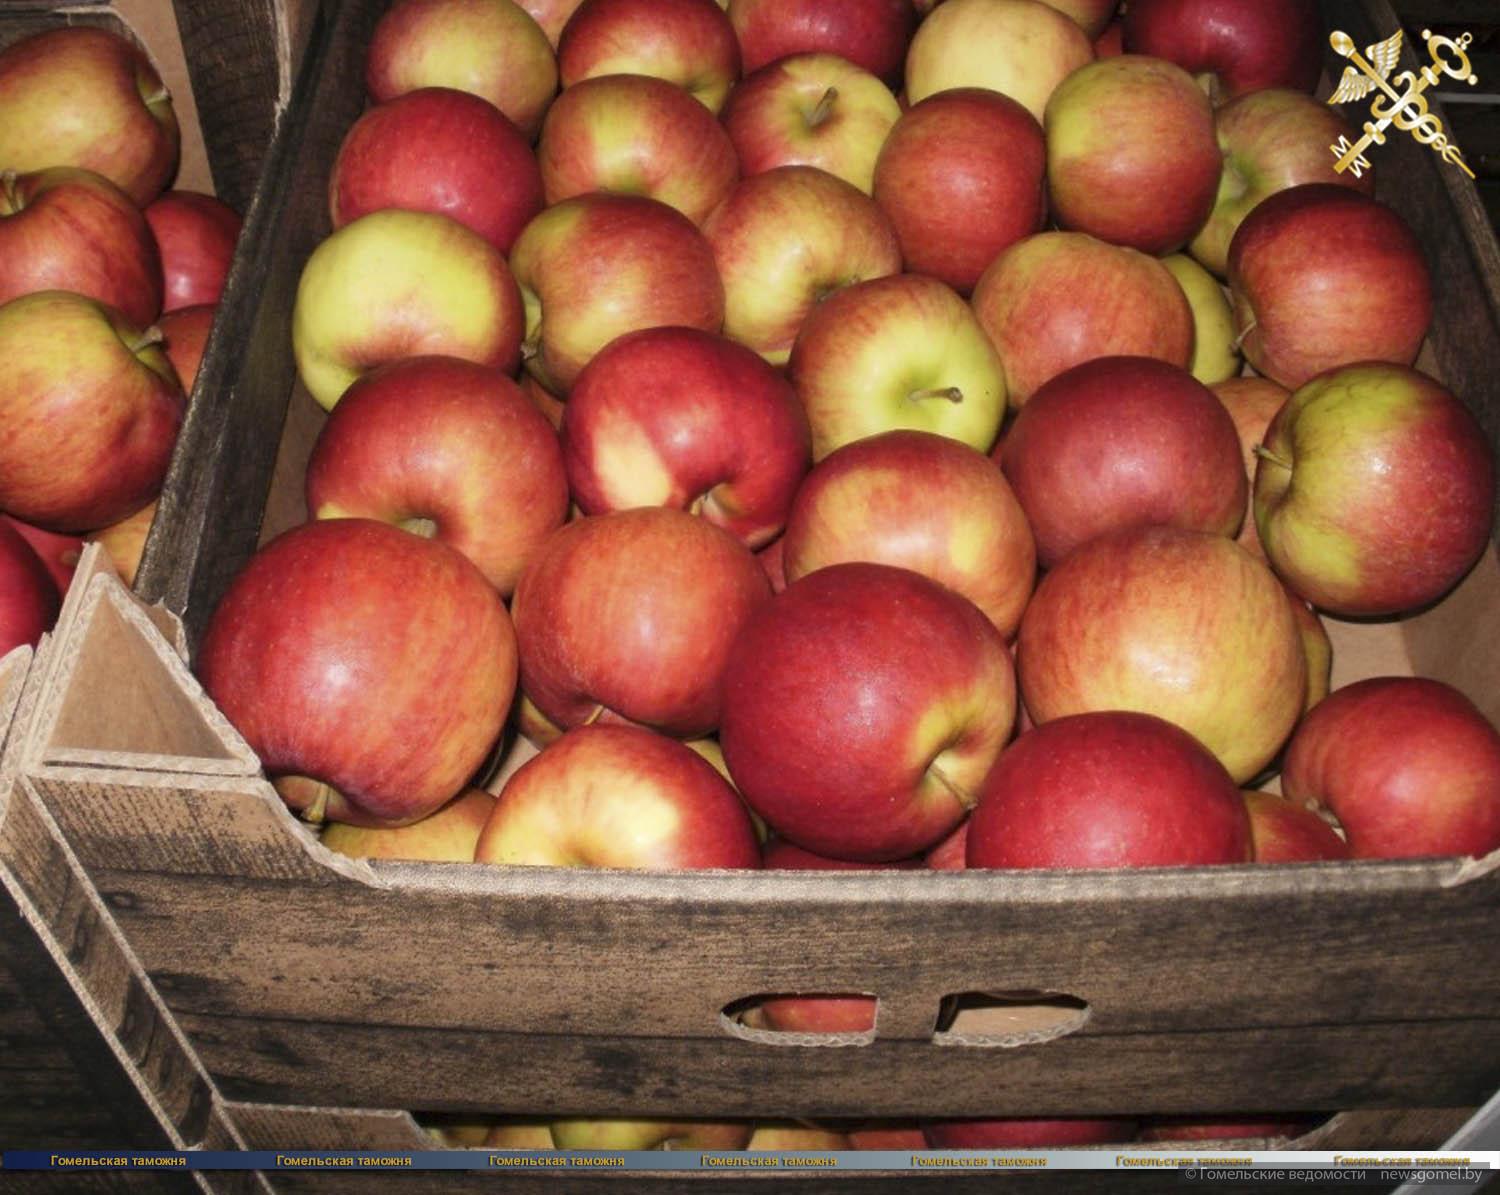 Купить яблоко недорого. Яблоня Лигол. Лиголь яблоки сорт. Ящик с яблоками. Яблоки в коробке.